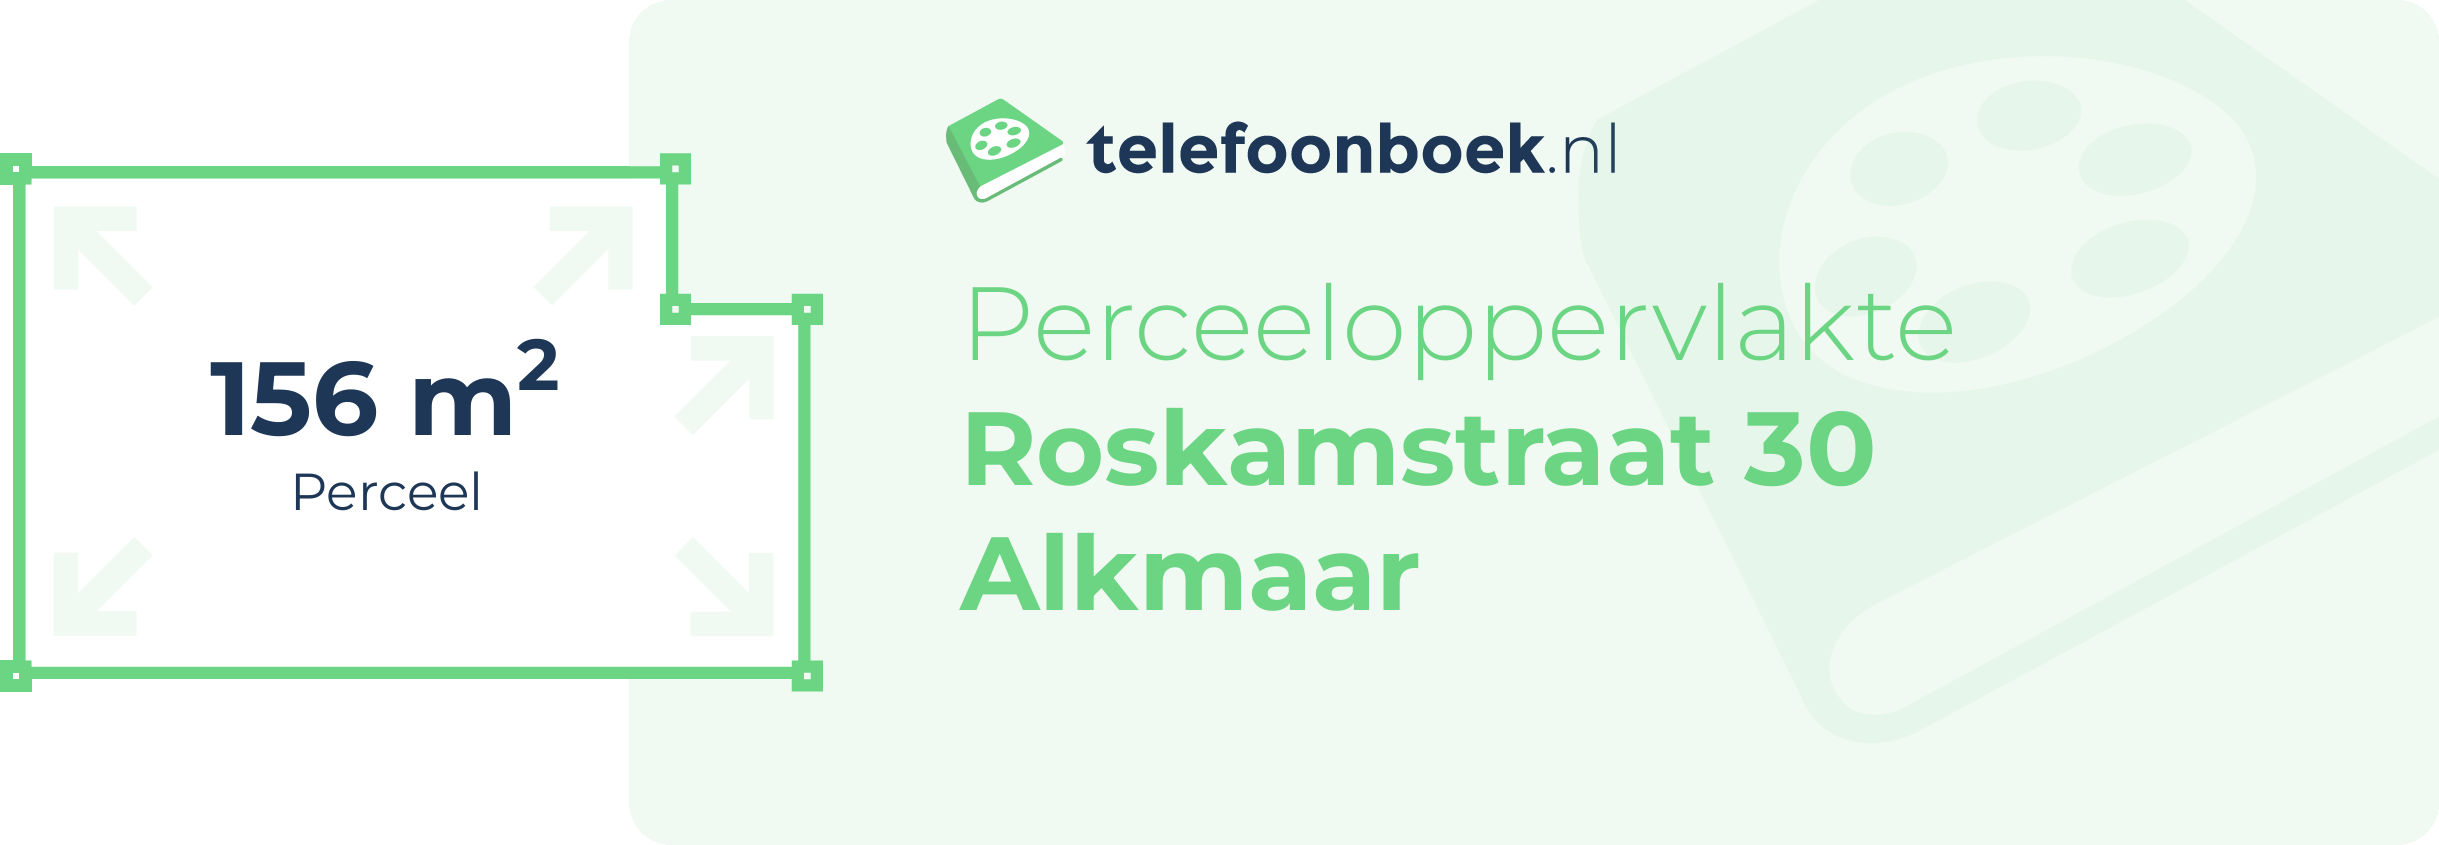 Perceeloppervlakte Roskamstraat 30 Alkmaar